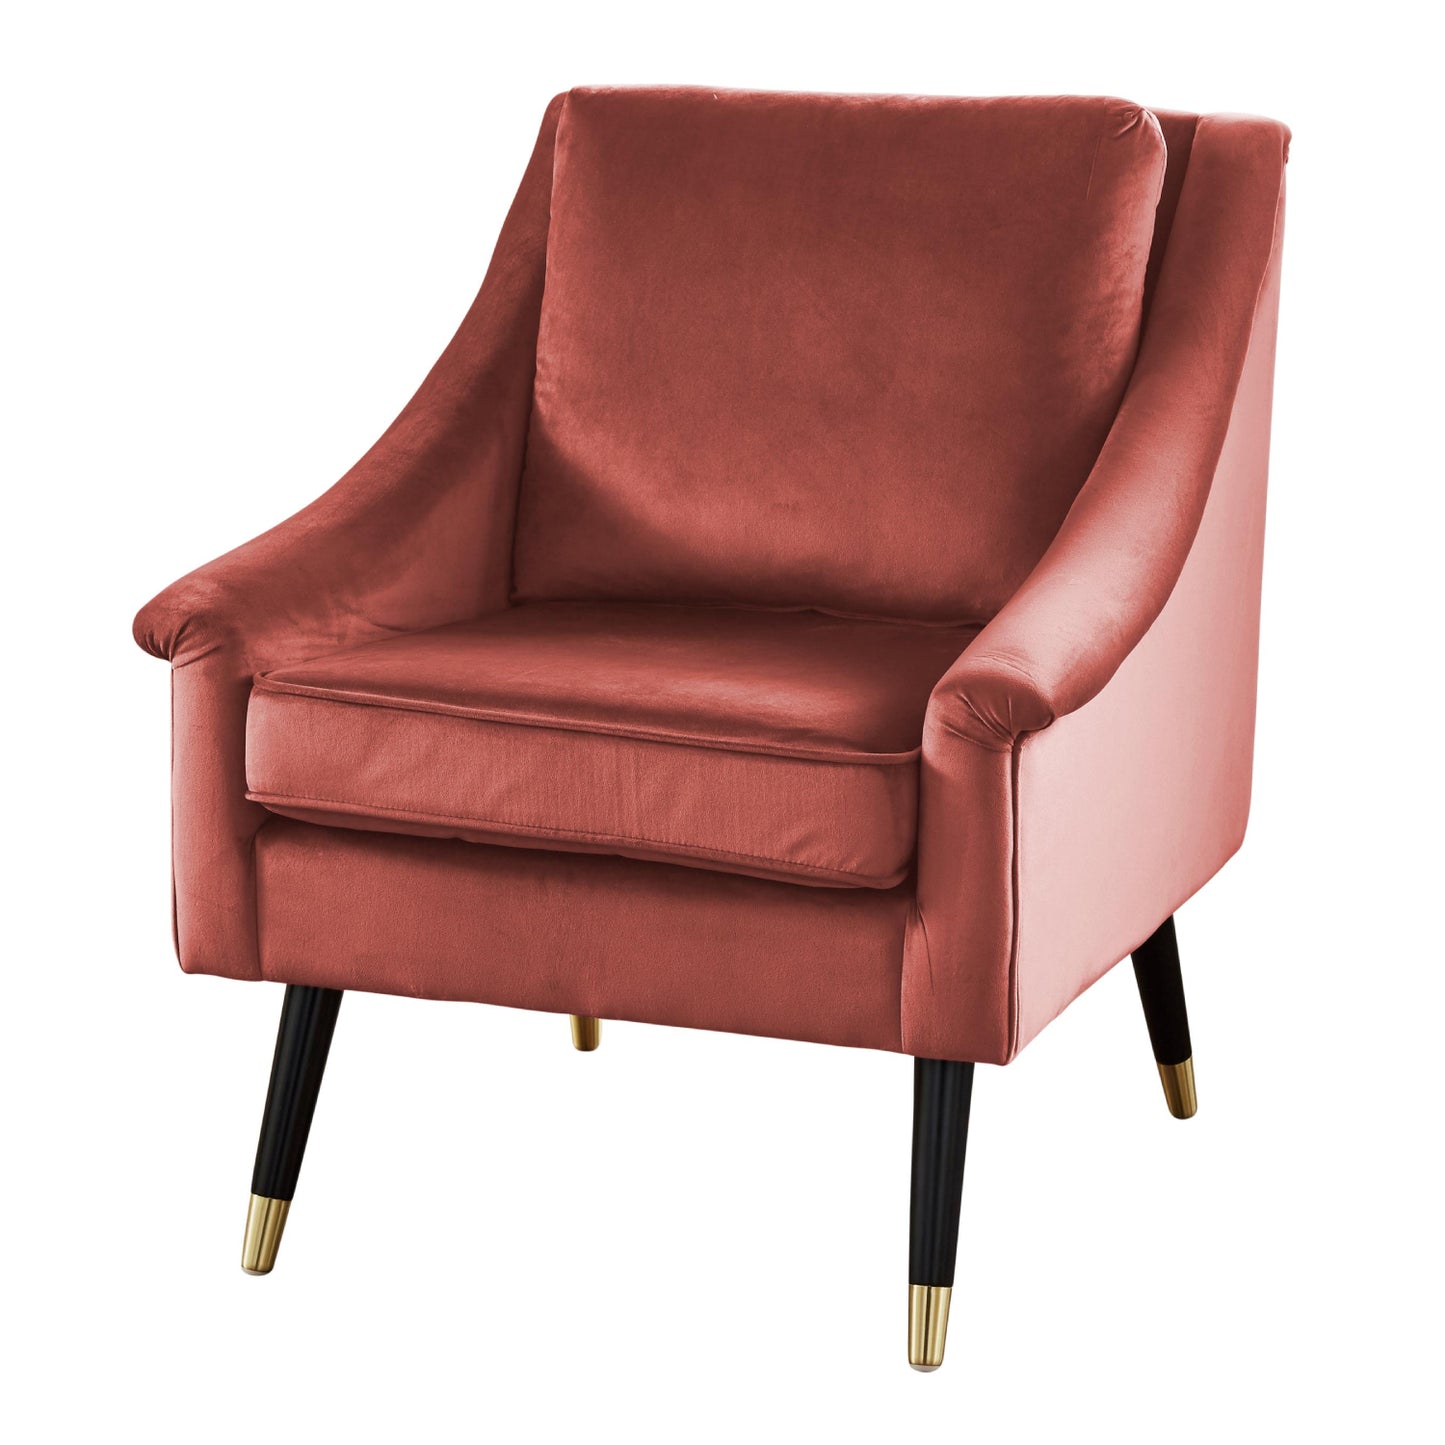 Rose velvet armchair by Native